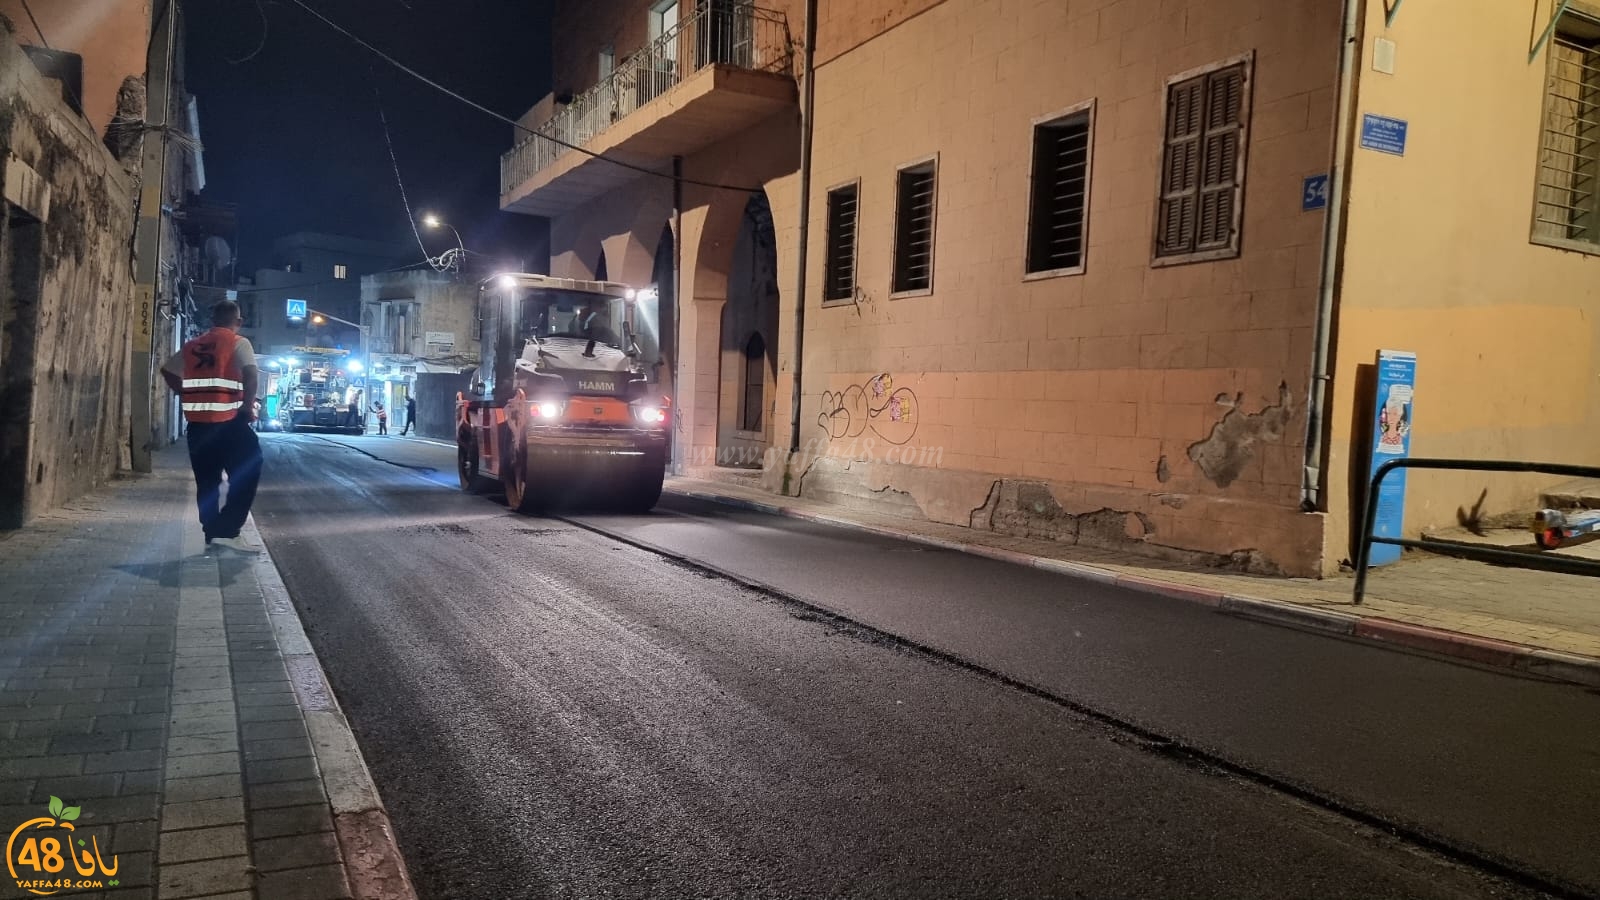  يافا: قرب الانتهاء من مشروع ترميم وتجديد شارع ييفت 